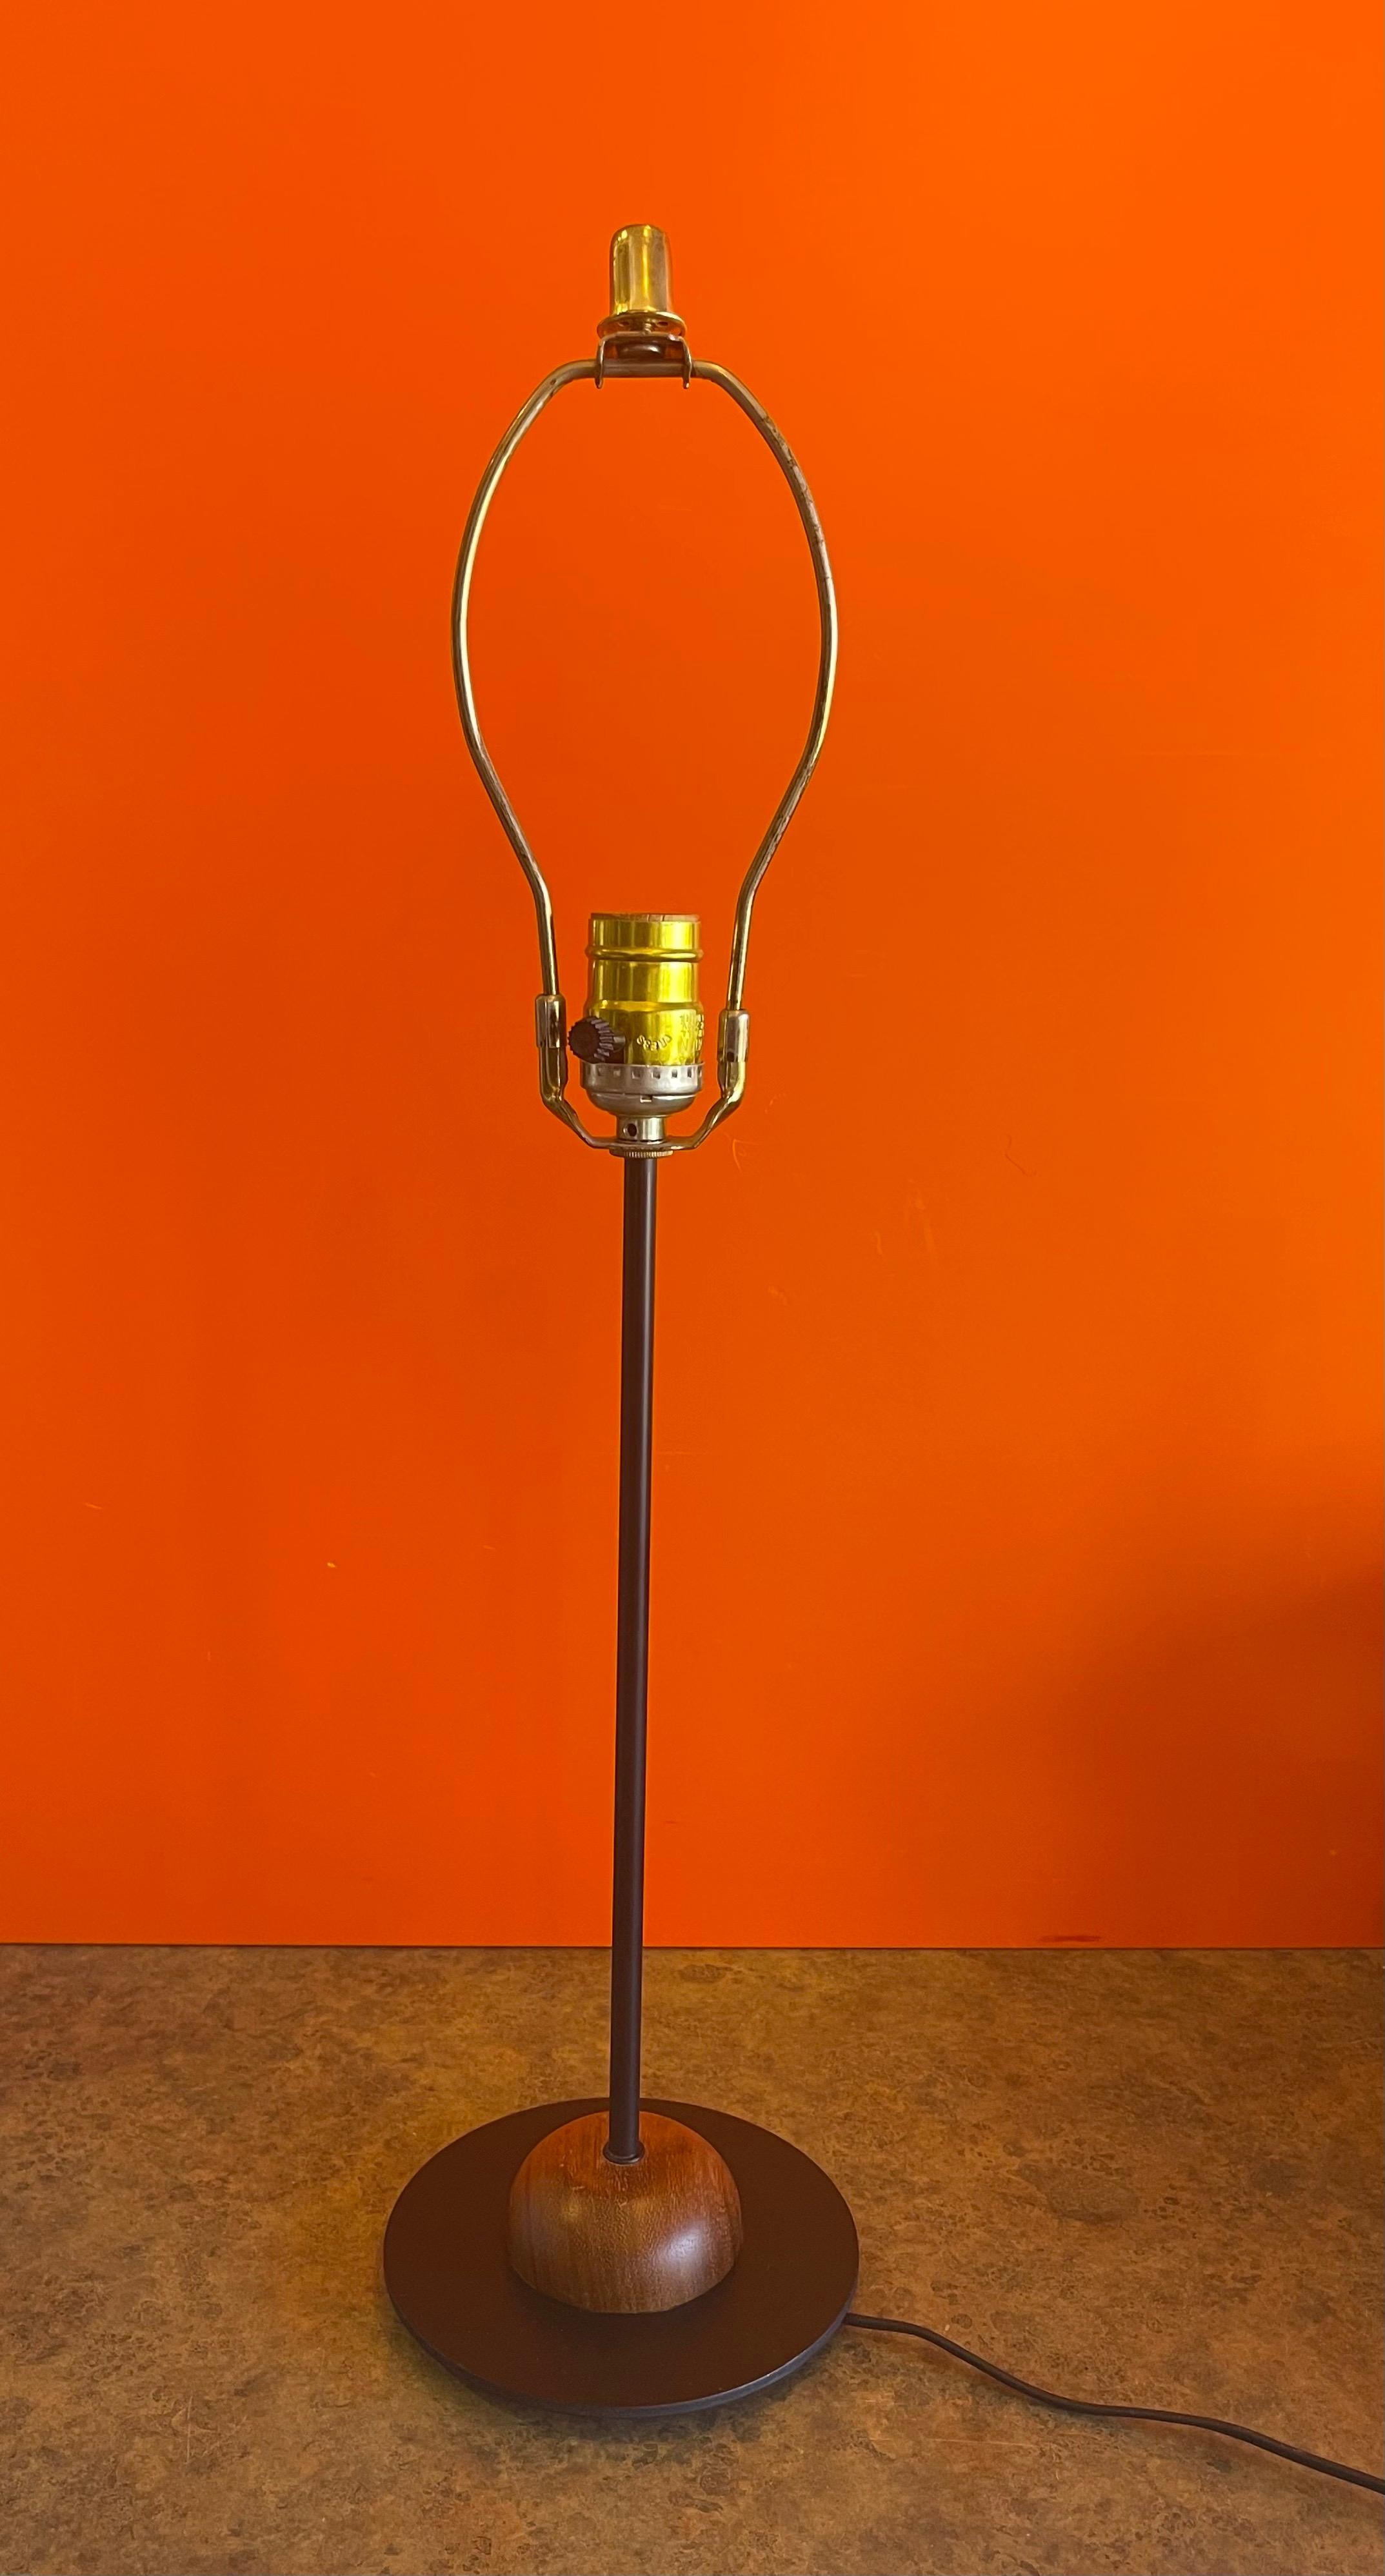 Magnifique lampe de table moderne danoise en métal noir et teck, vers les années 1980. La base en teck de la lampe mesure 6